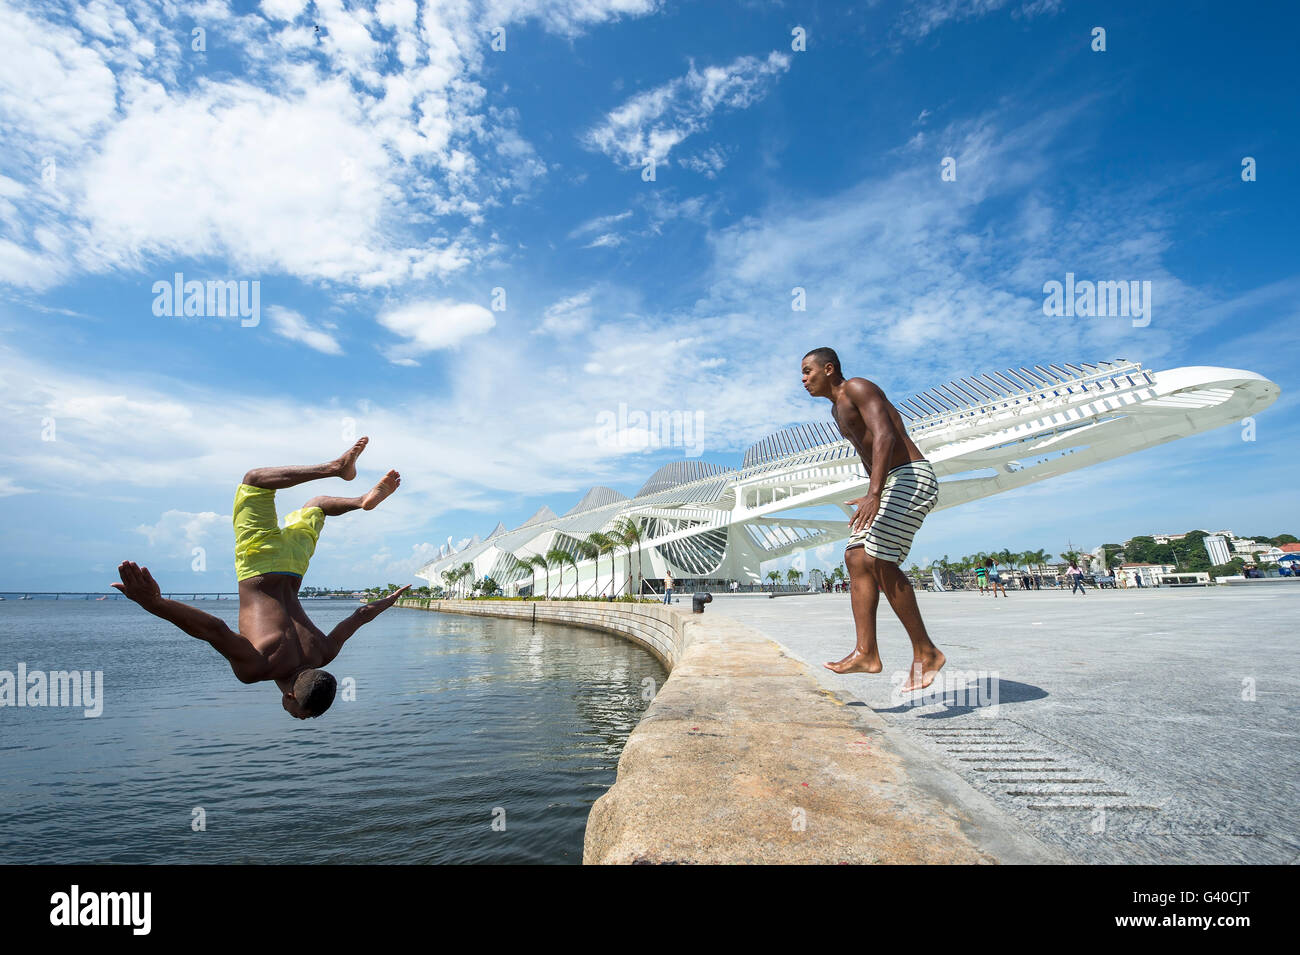 RIO DE JANEIRO - FEBRUARY 25, 2016: Young Brazilians jump into Guanabara Bay from the wall at Maua Plaza, Porto Maravilha. Stock Photo